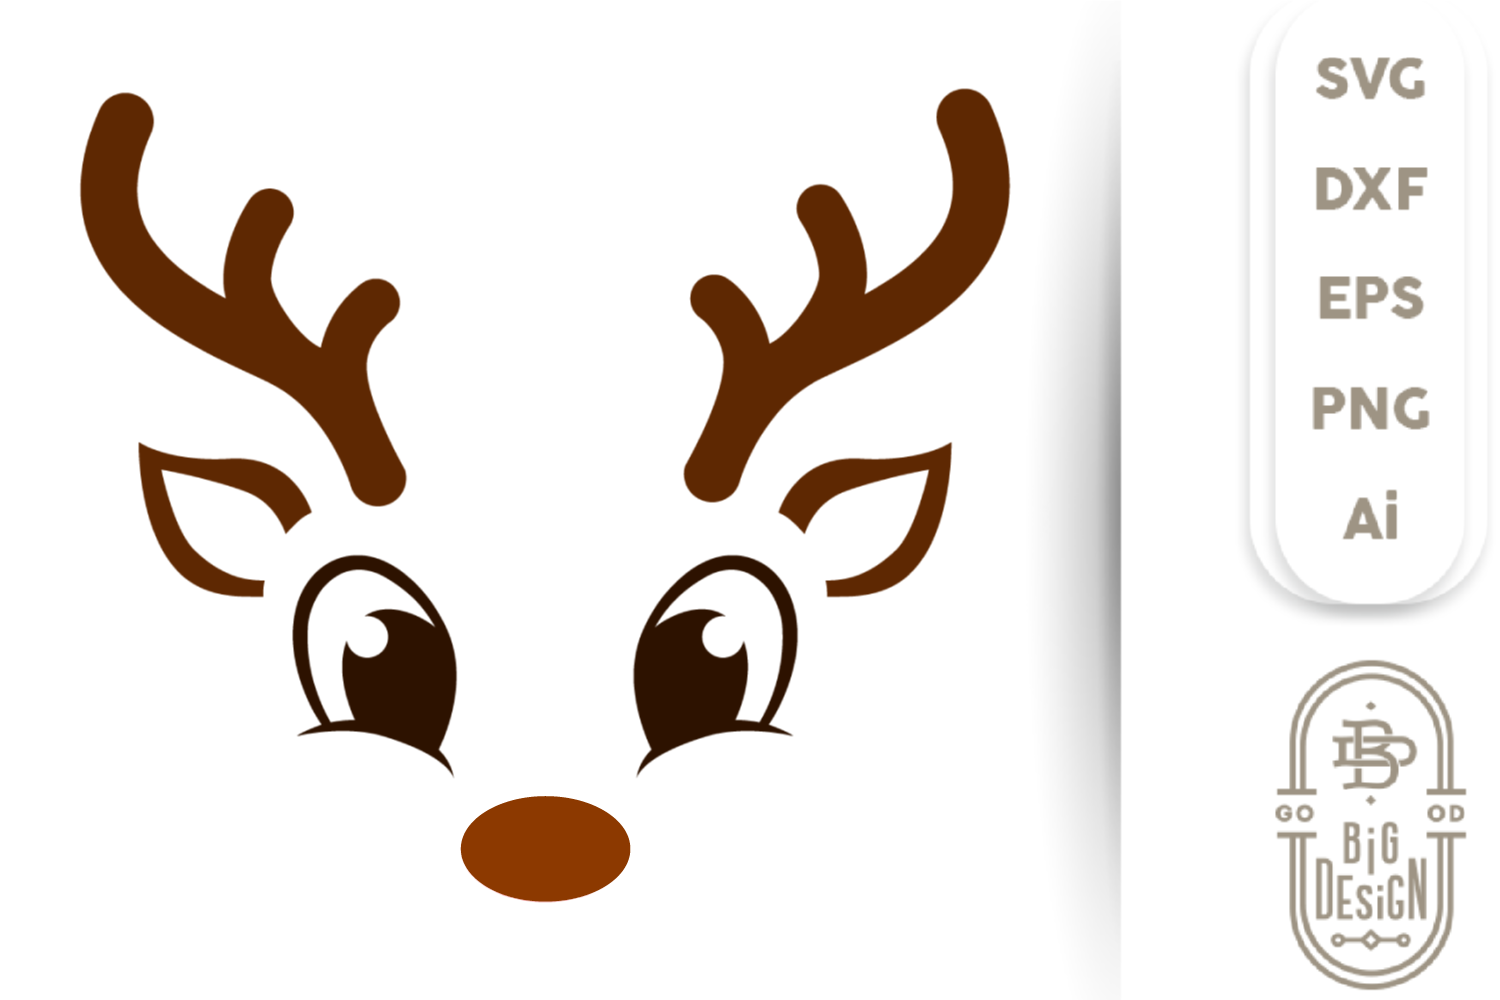 Christmas Svg - Cute Reindeer Svg , Boy Reindeer Face Svg By Big Design T.....